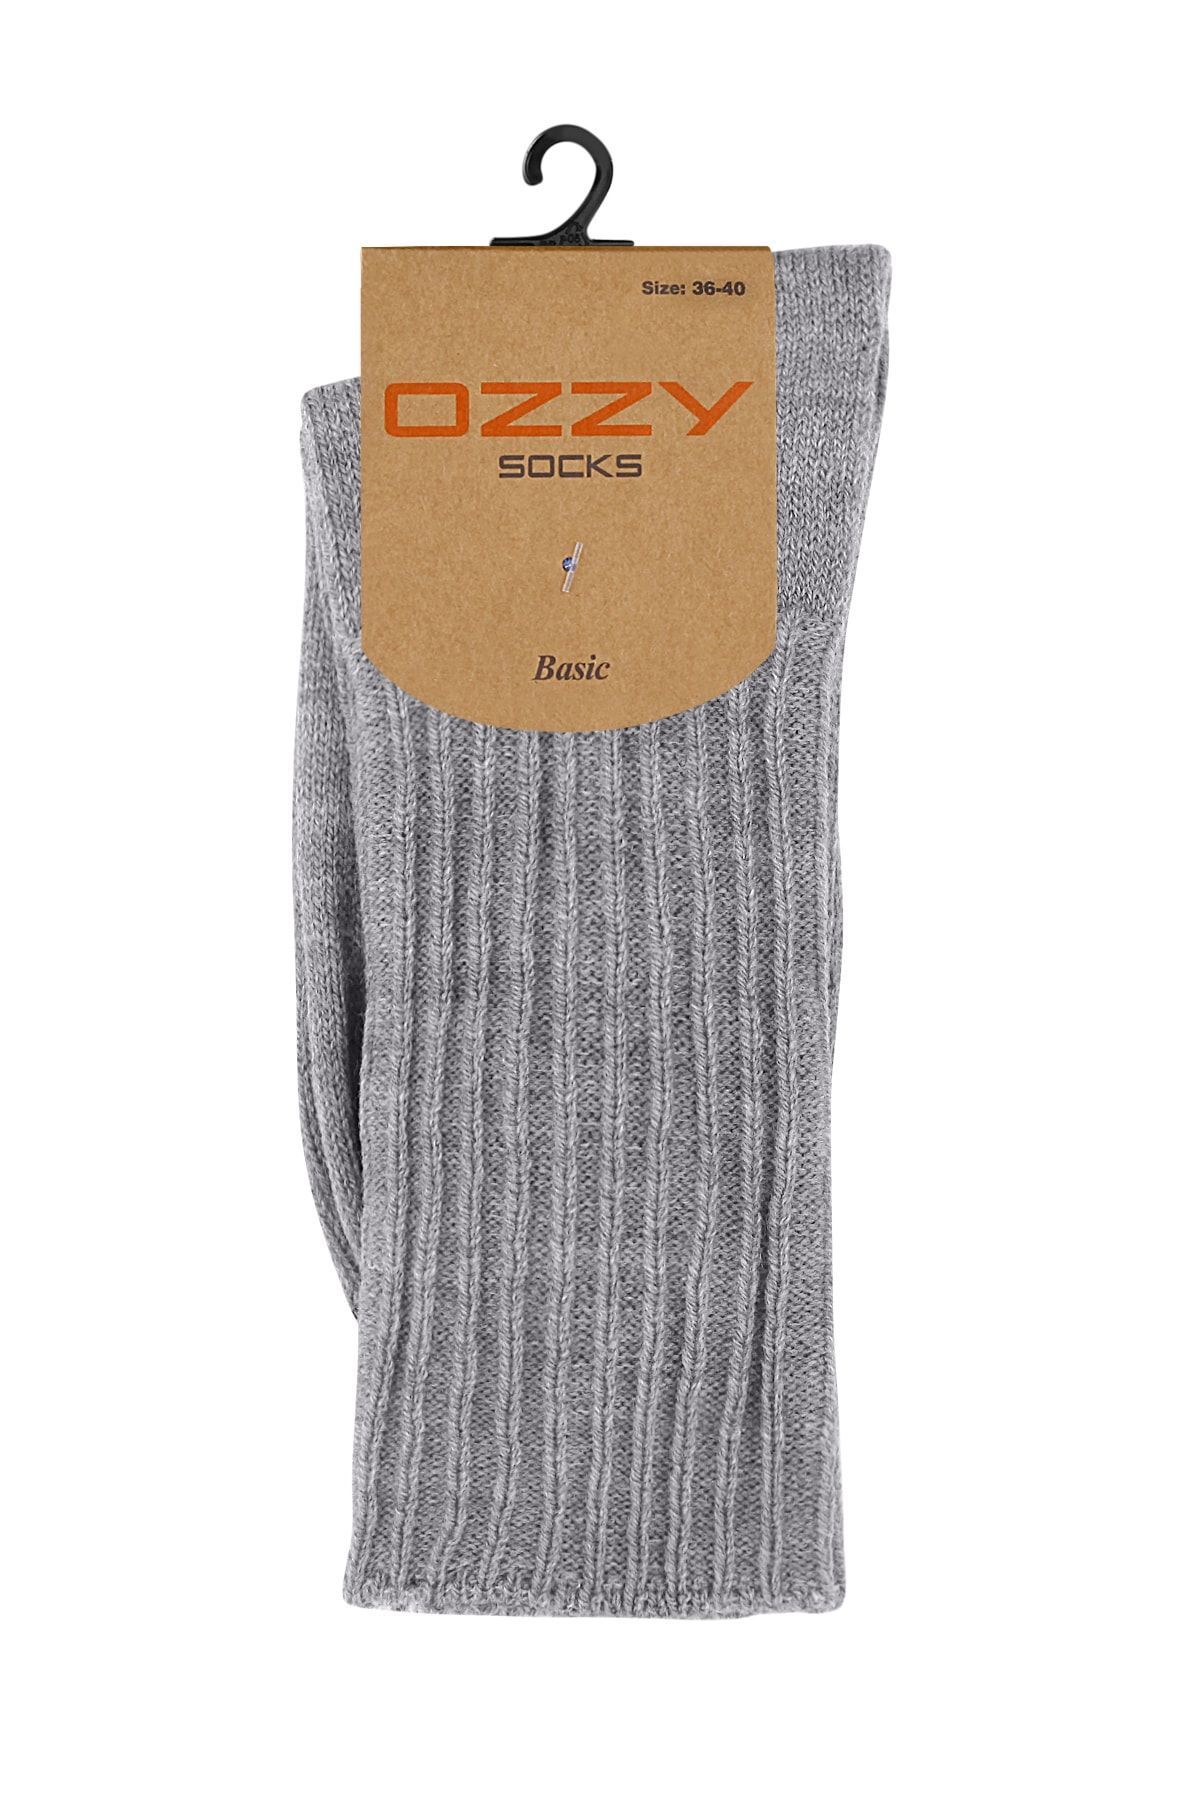 Ozzy Socks Kışlık Kadın Yünlü Gri Renk Uyku Çorabı Soft Touch